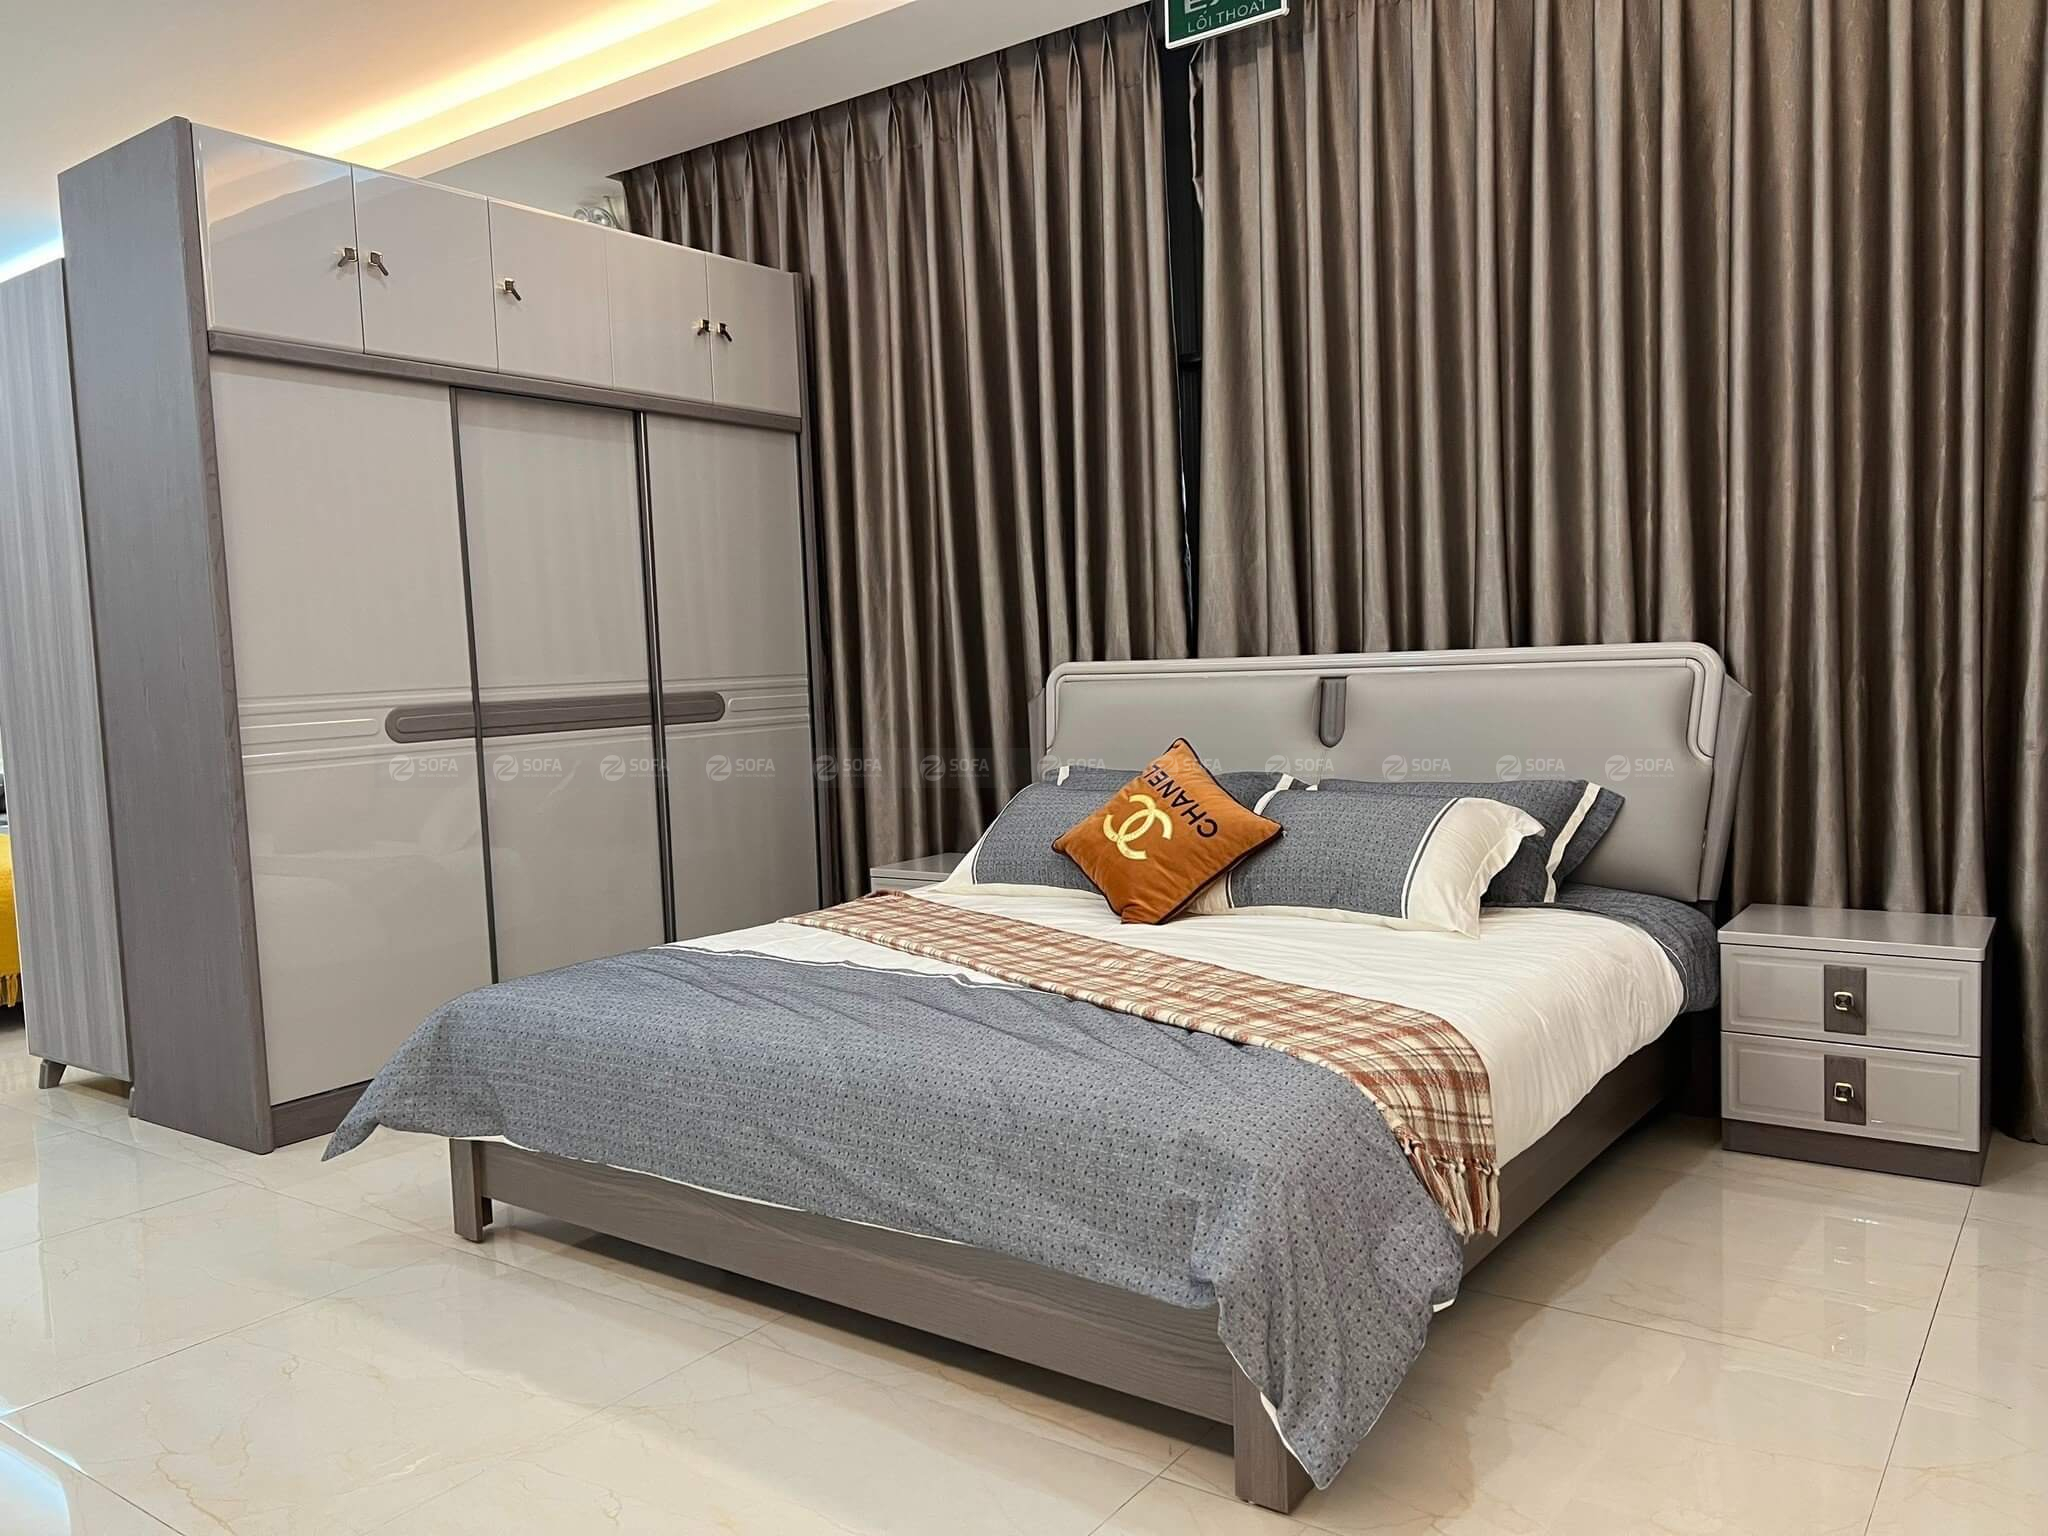 Chọn bộ giường phòng ngủ đẹp Sài Gòn từ zSofa